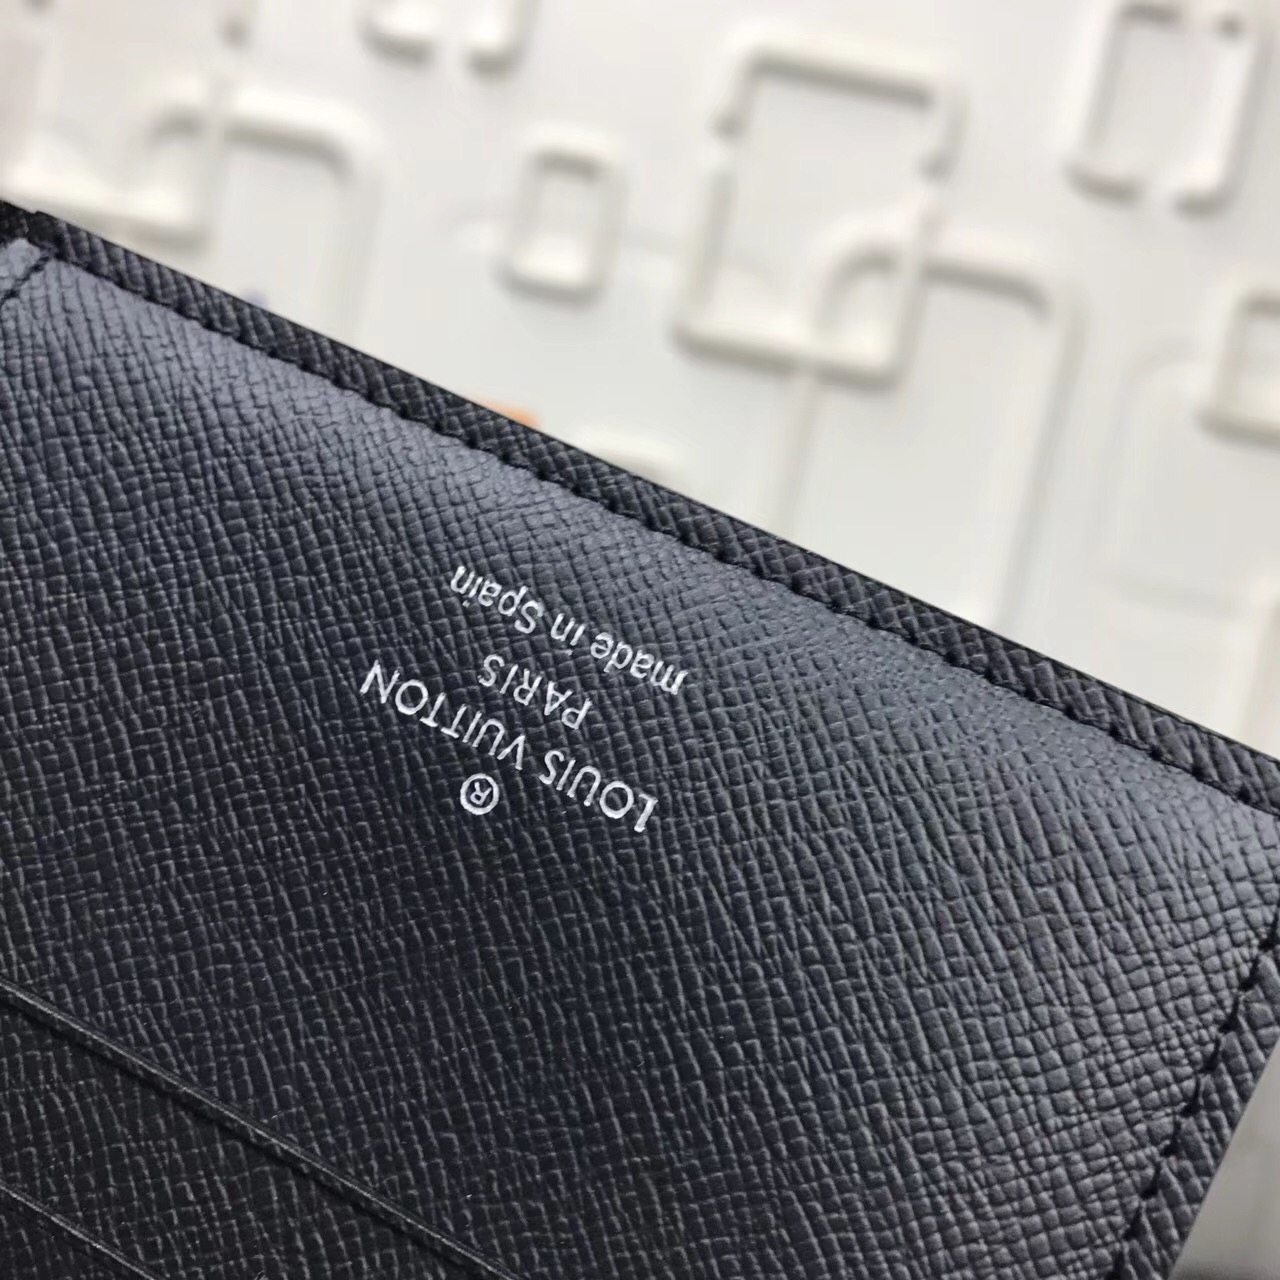 Shopbop Archive Louis Vuitton Zippy Wallet, Damier Ebene